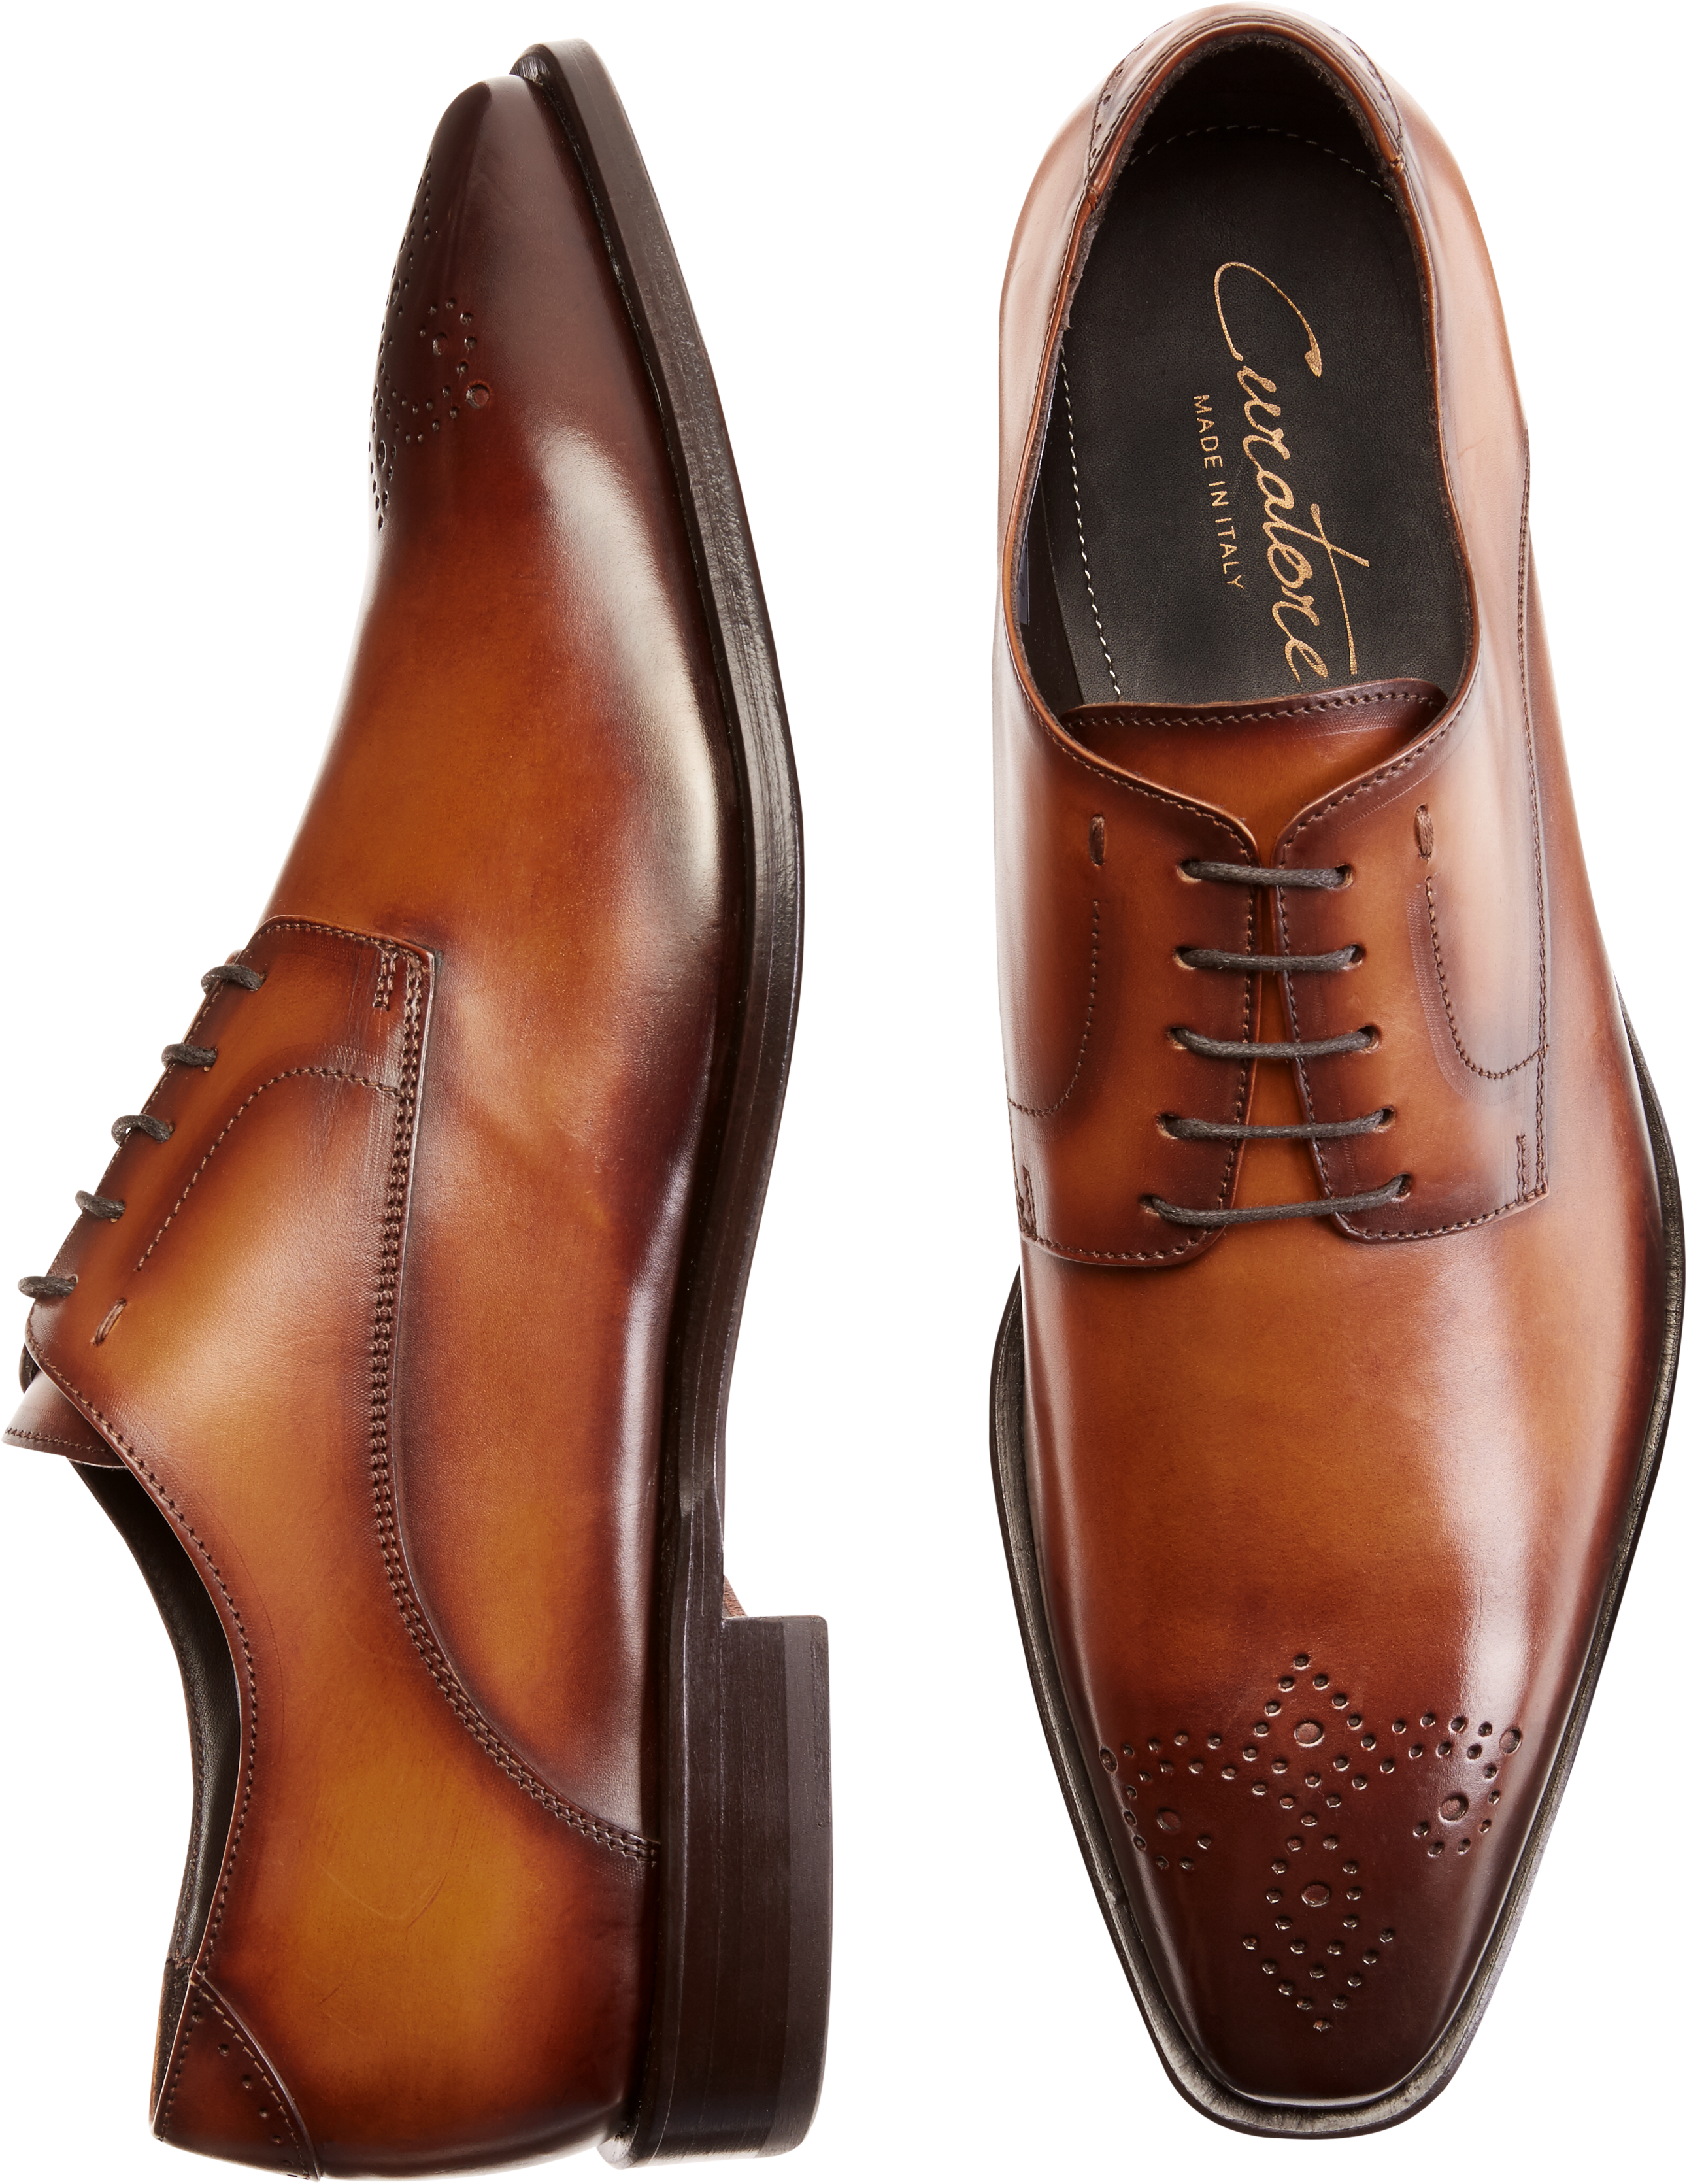 Curatore Enzo Tan Plain Toe Oxfords - Men's Shoes | Men's Wearhouse